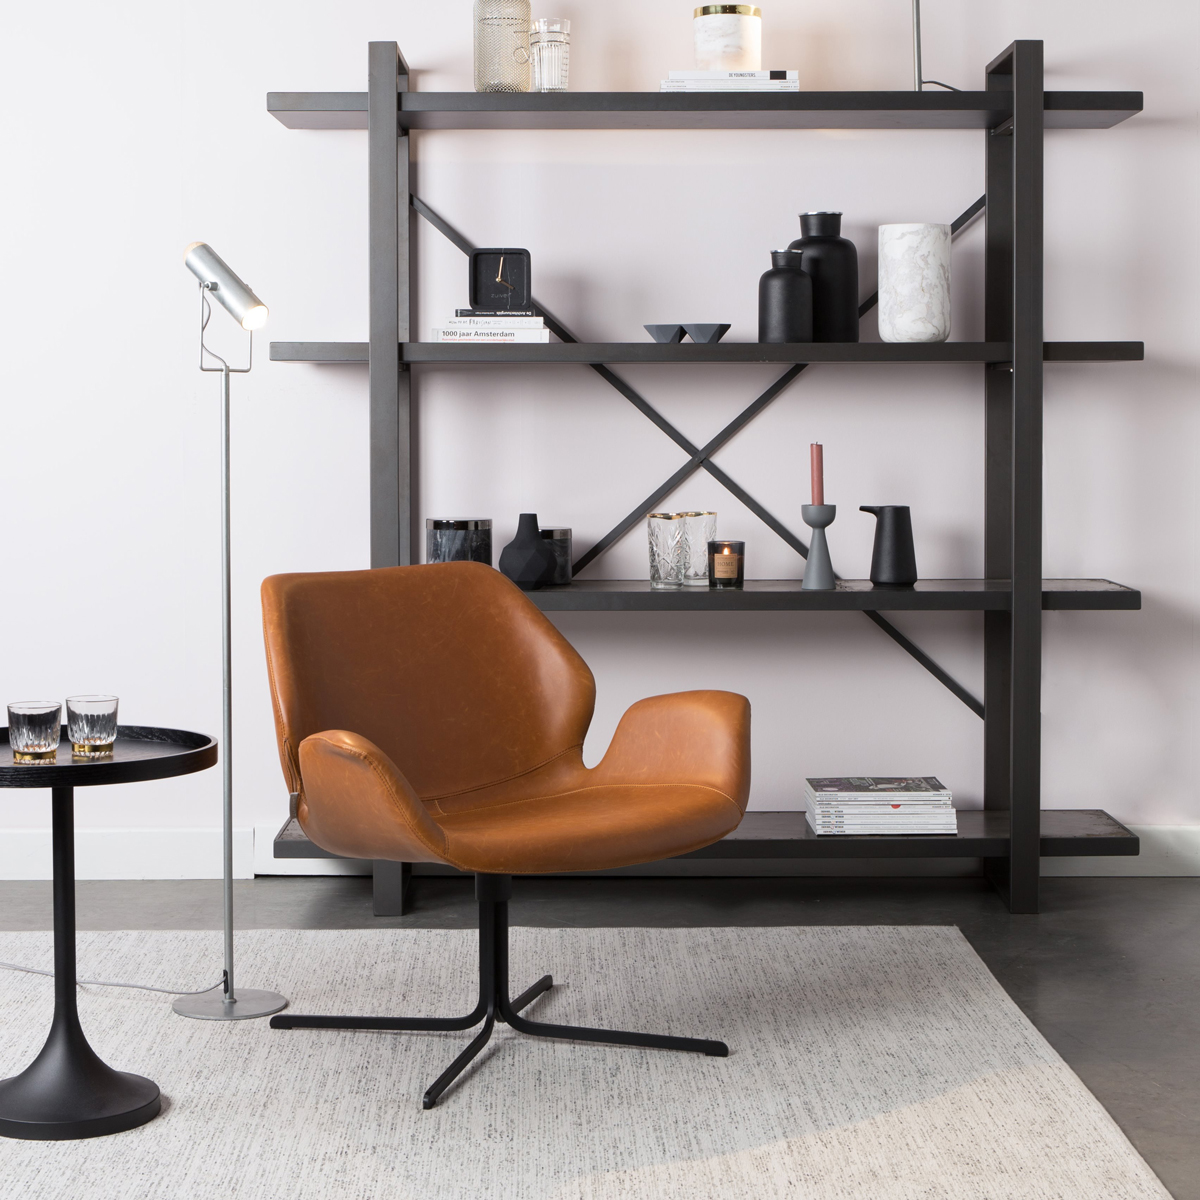 Deze draaifauteuil in cognac kleur bruin, is gemaakt van kunstleer. De draaistoel heeft een strak onderstel, waardoor de stoel een industriële look heeft. 